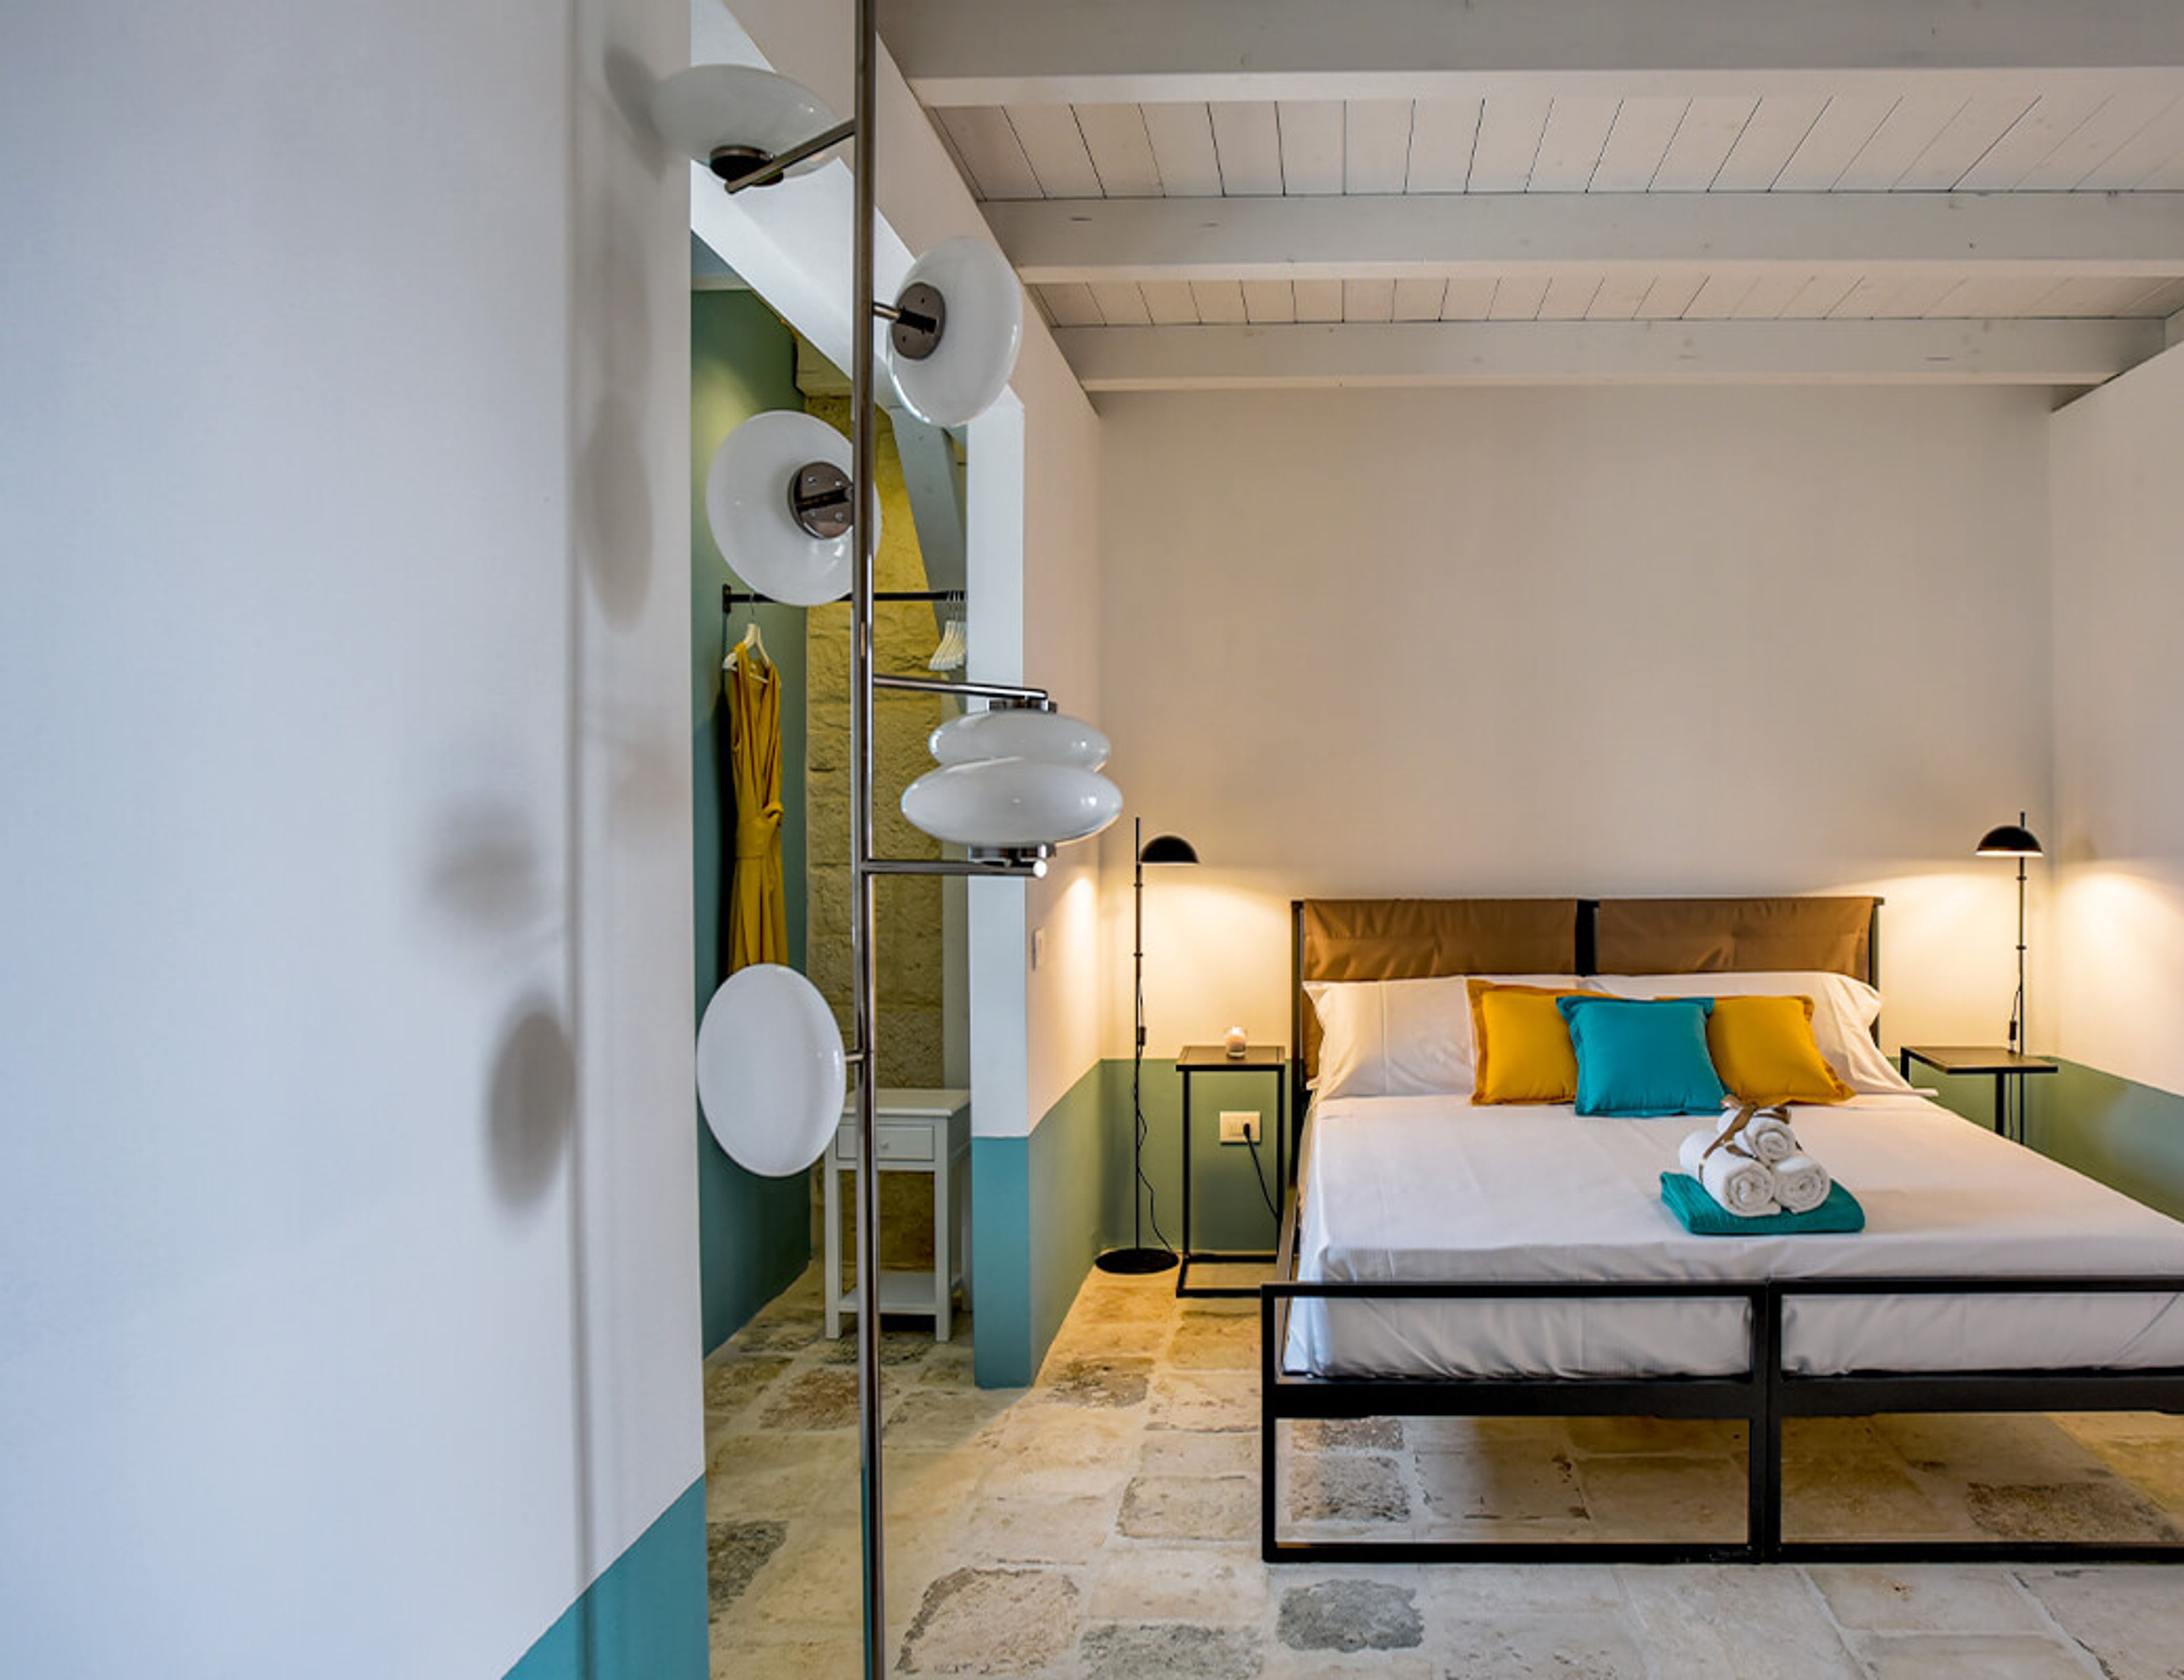 B&B boutique suite - Apartments for Rent in Bari, Puglia, Italy